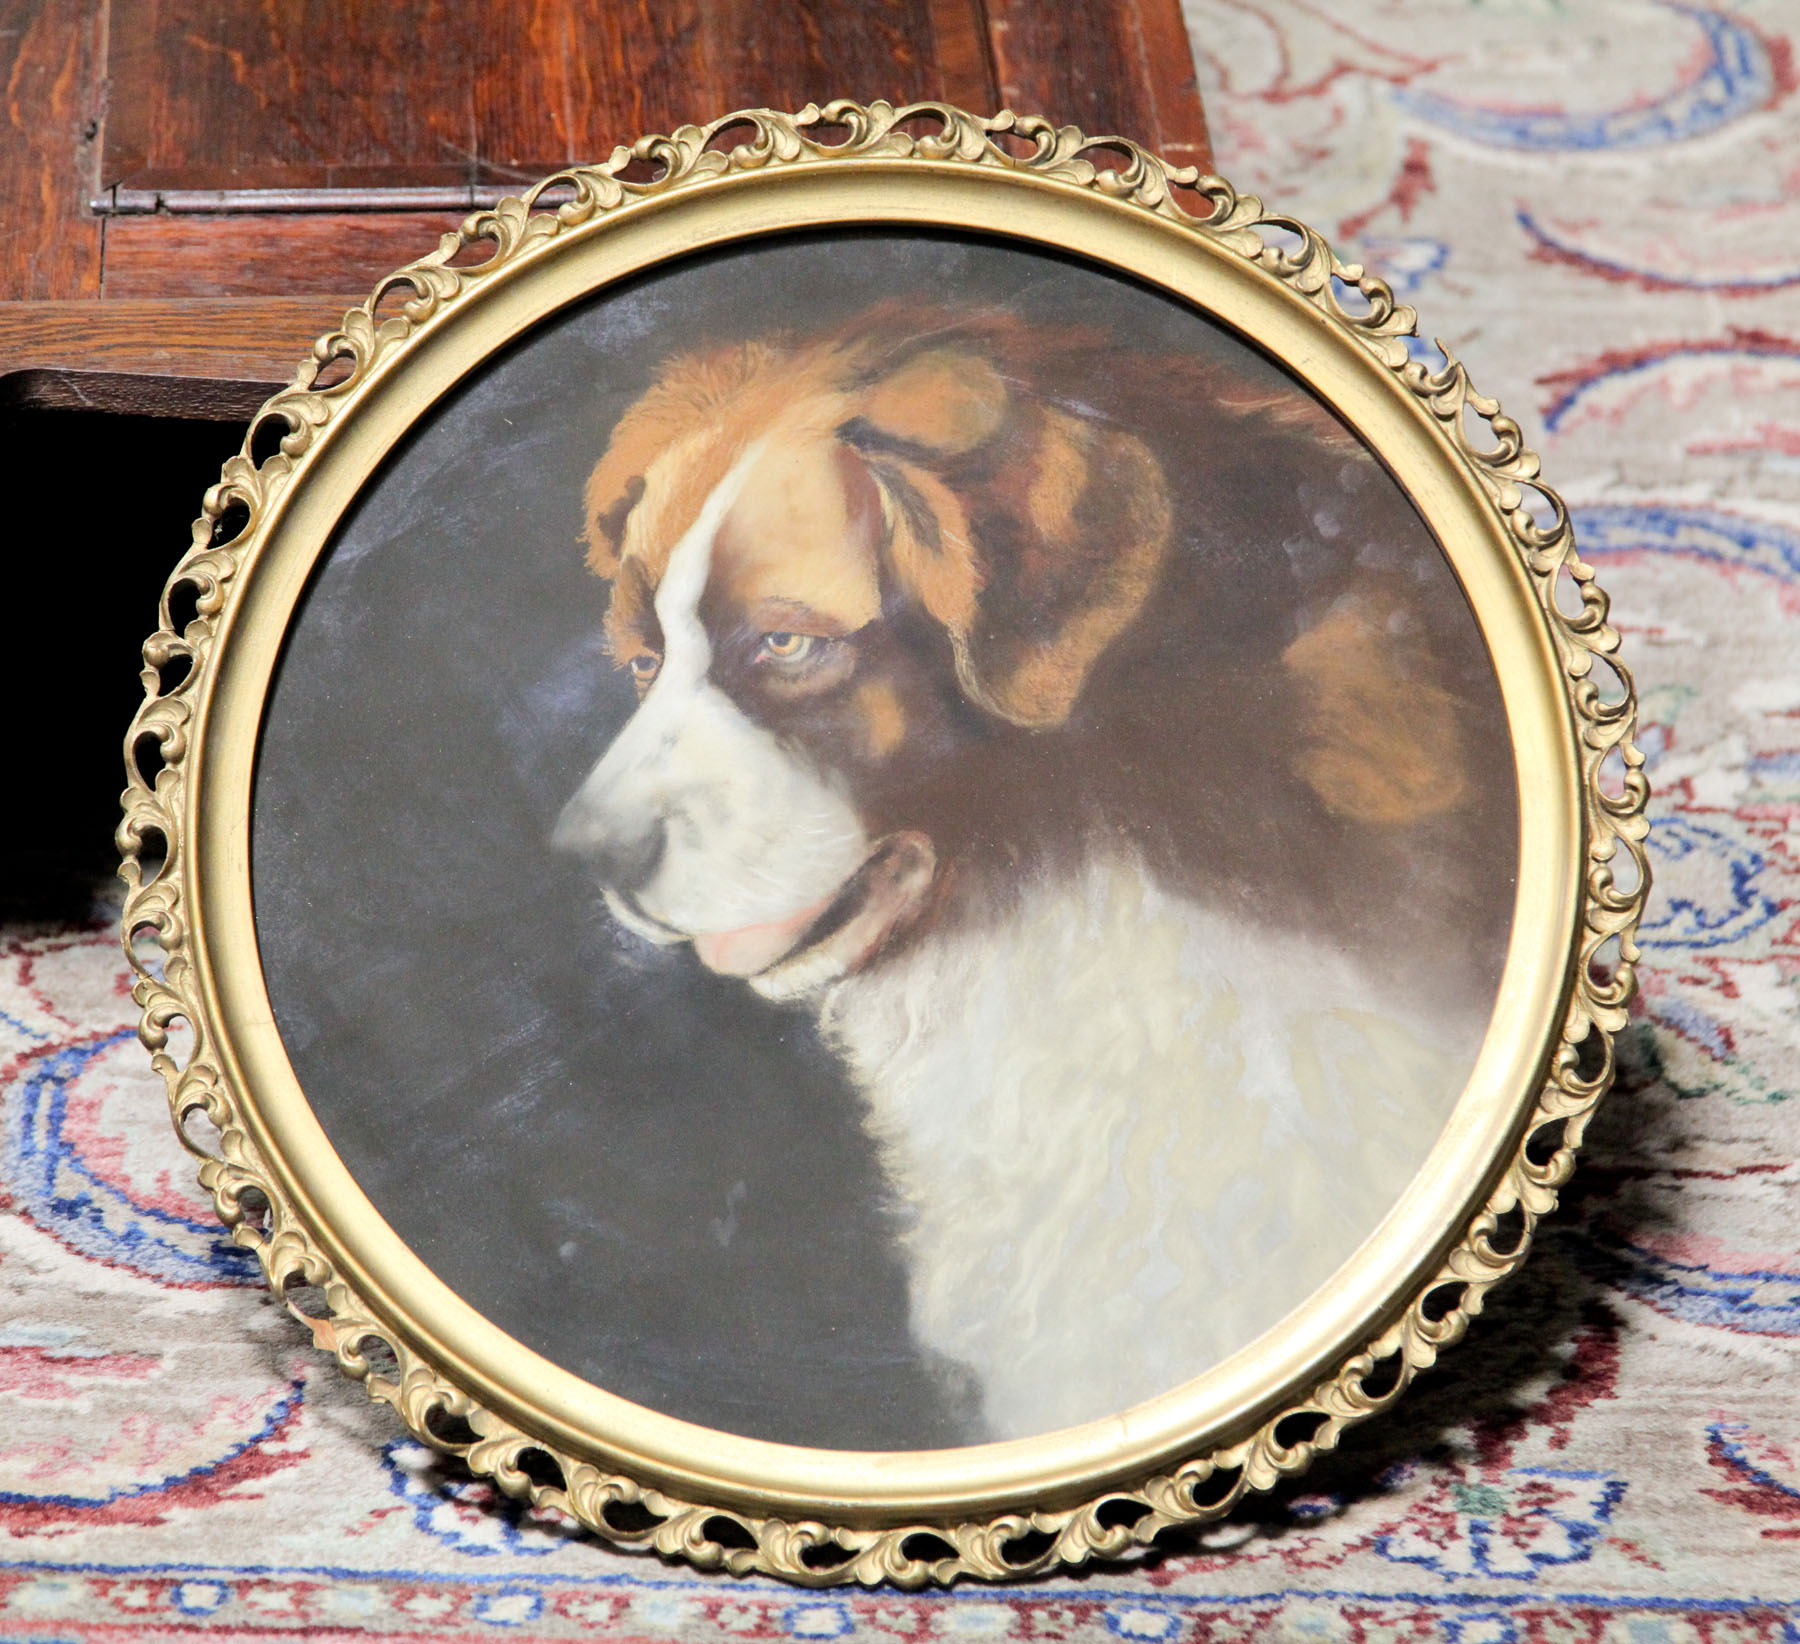 PORTRAIT OF A SAINT BERNARD DOG